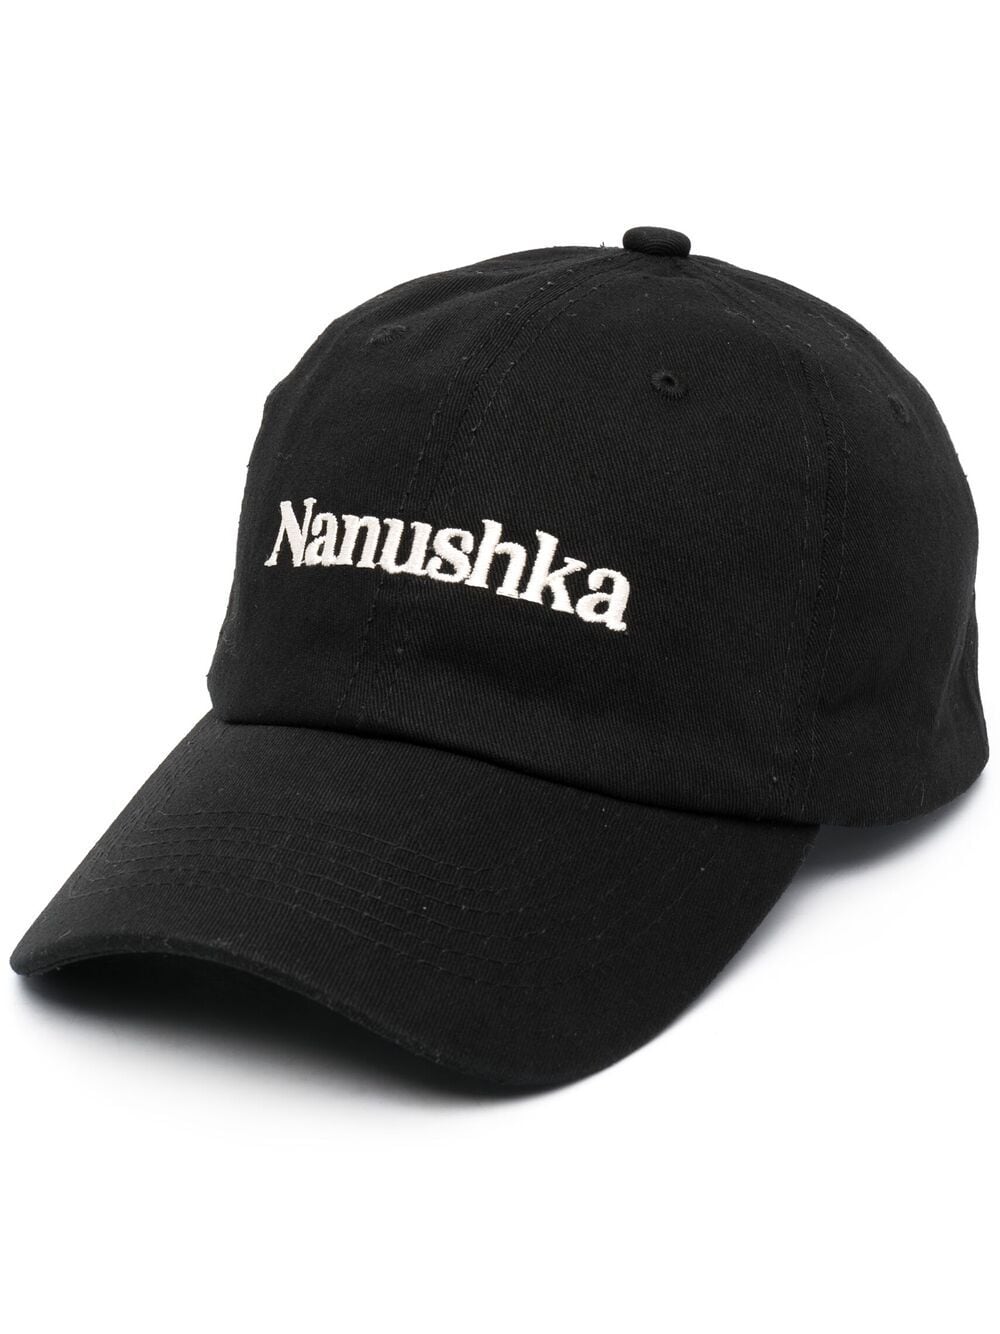 Nanushka logo-embroidered baseball cap - Black von Nanushka